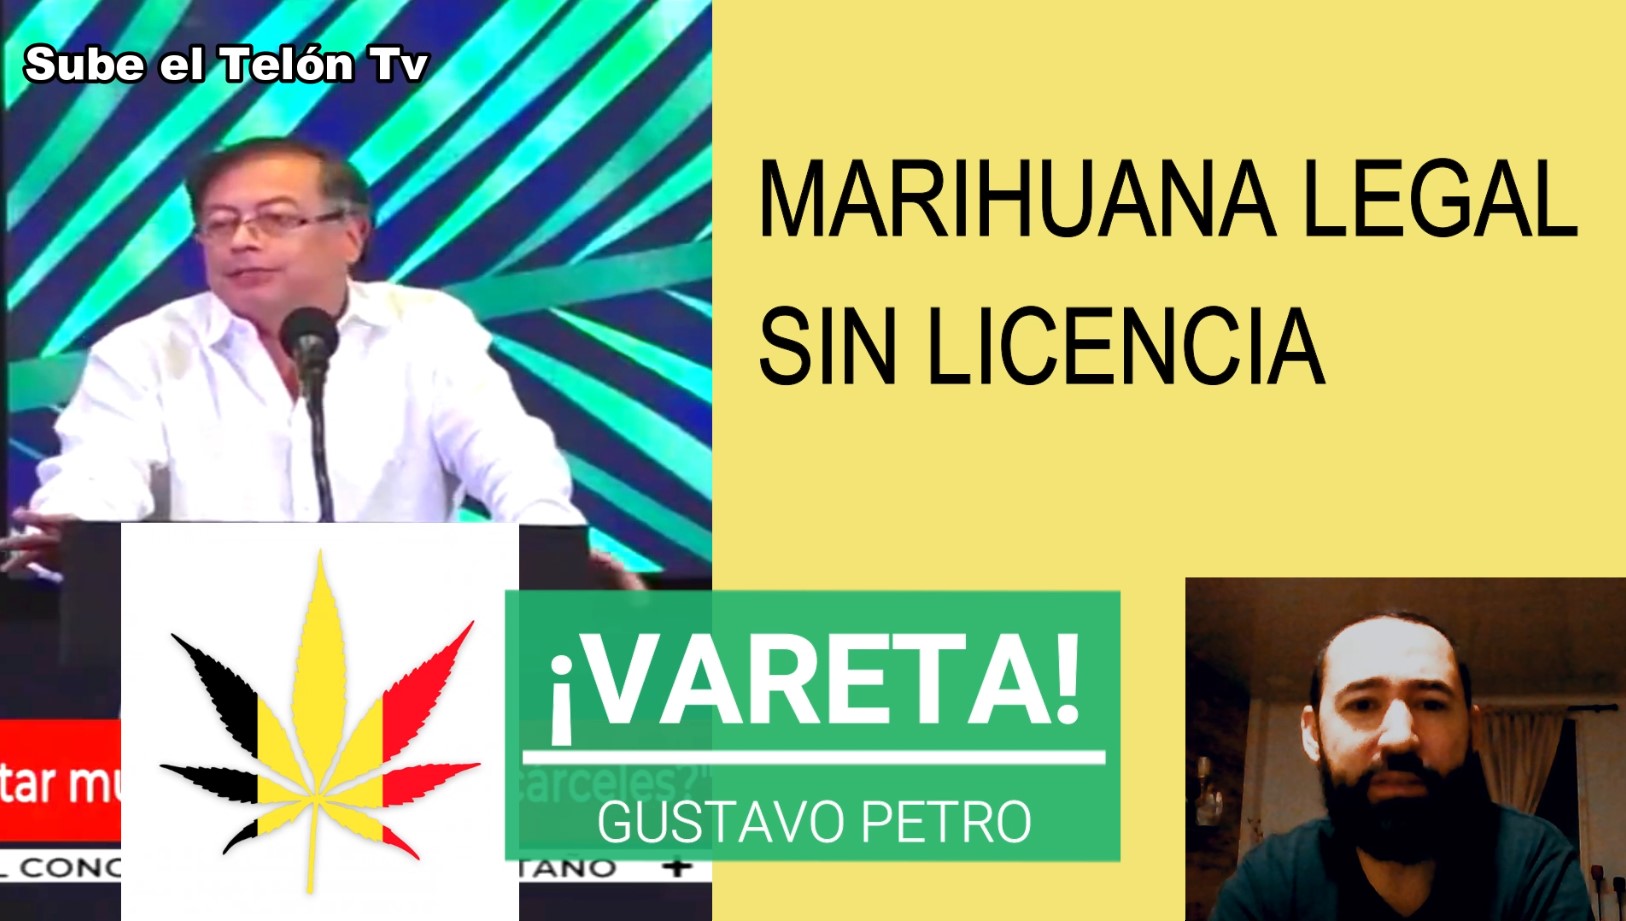 Gustavo Petro Legalizaria la Marihuana en Colombia